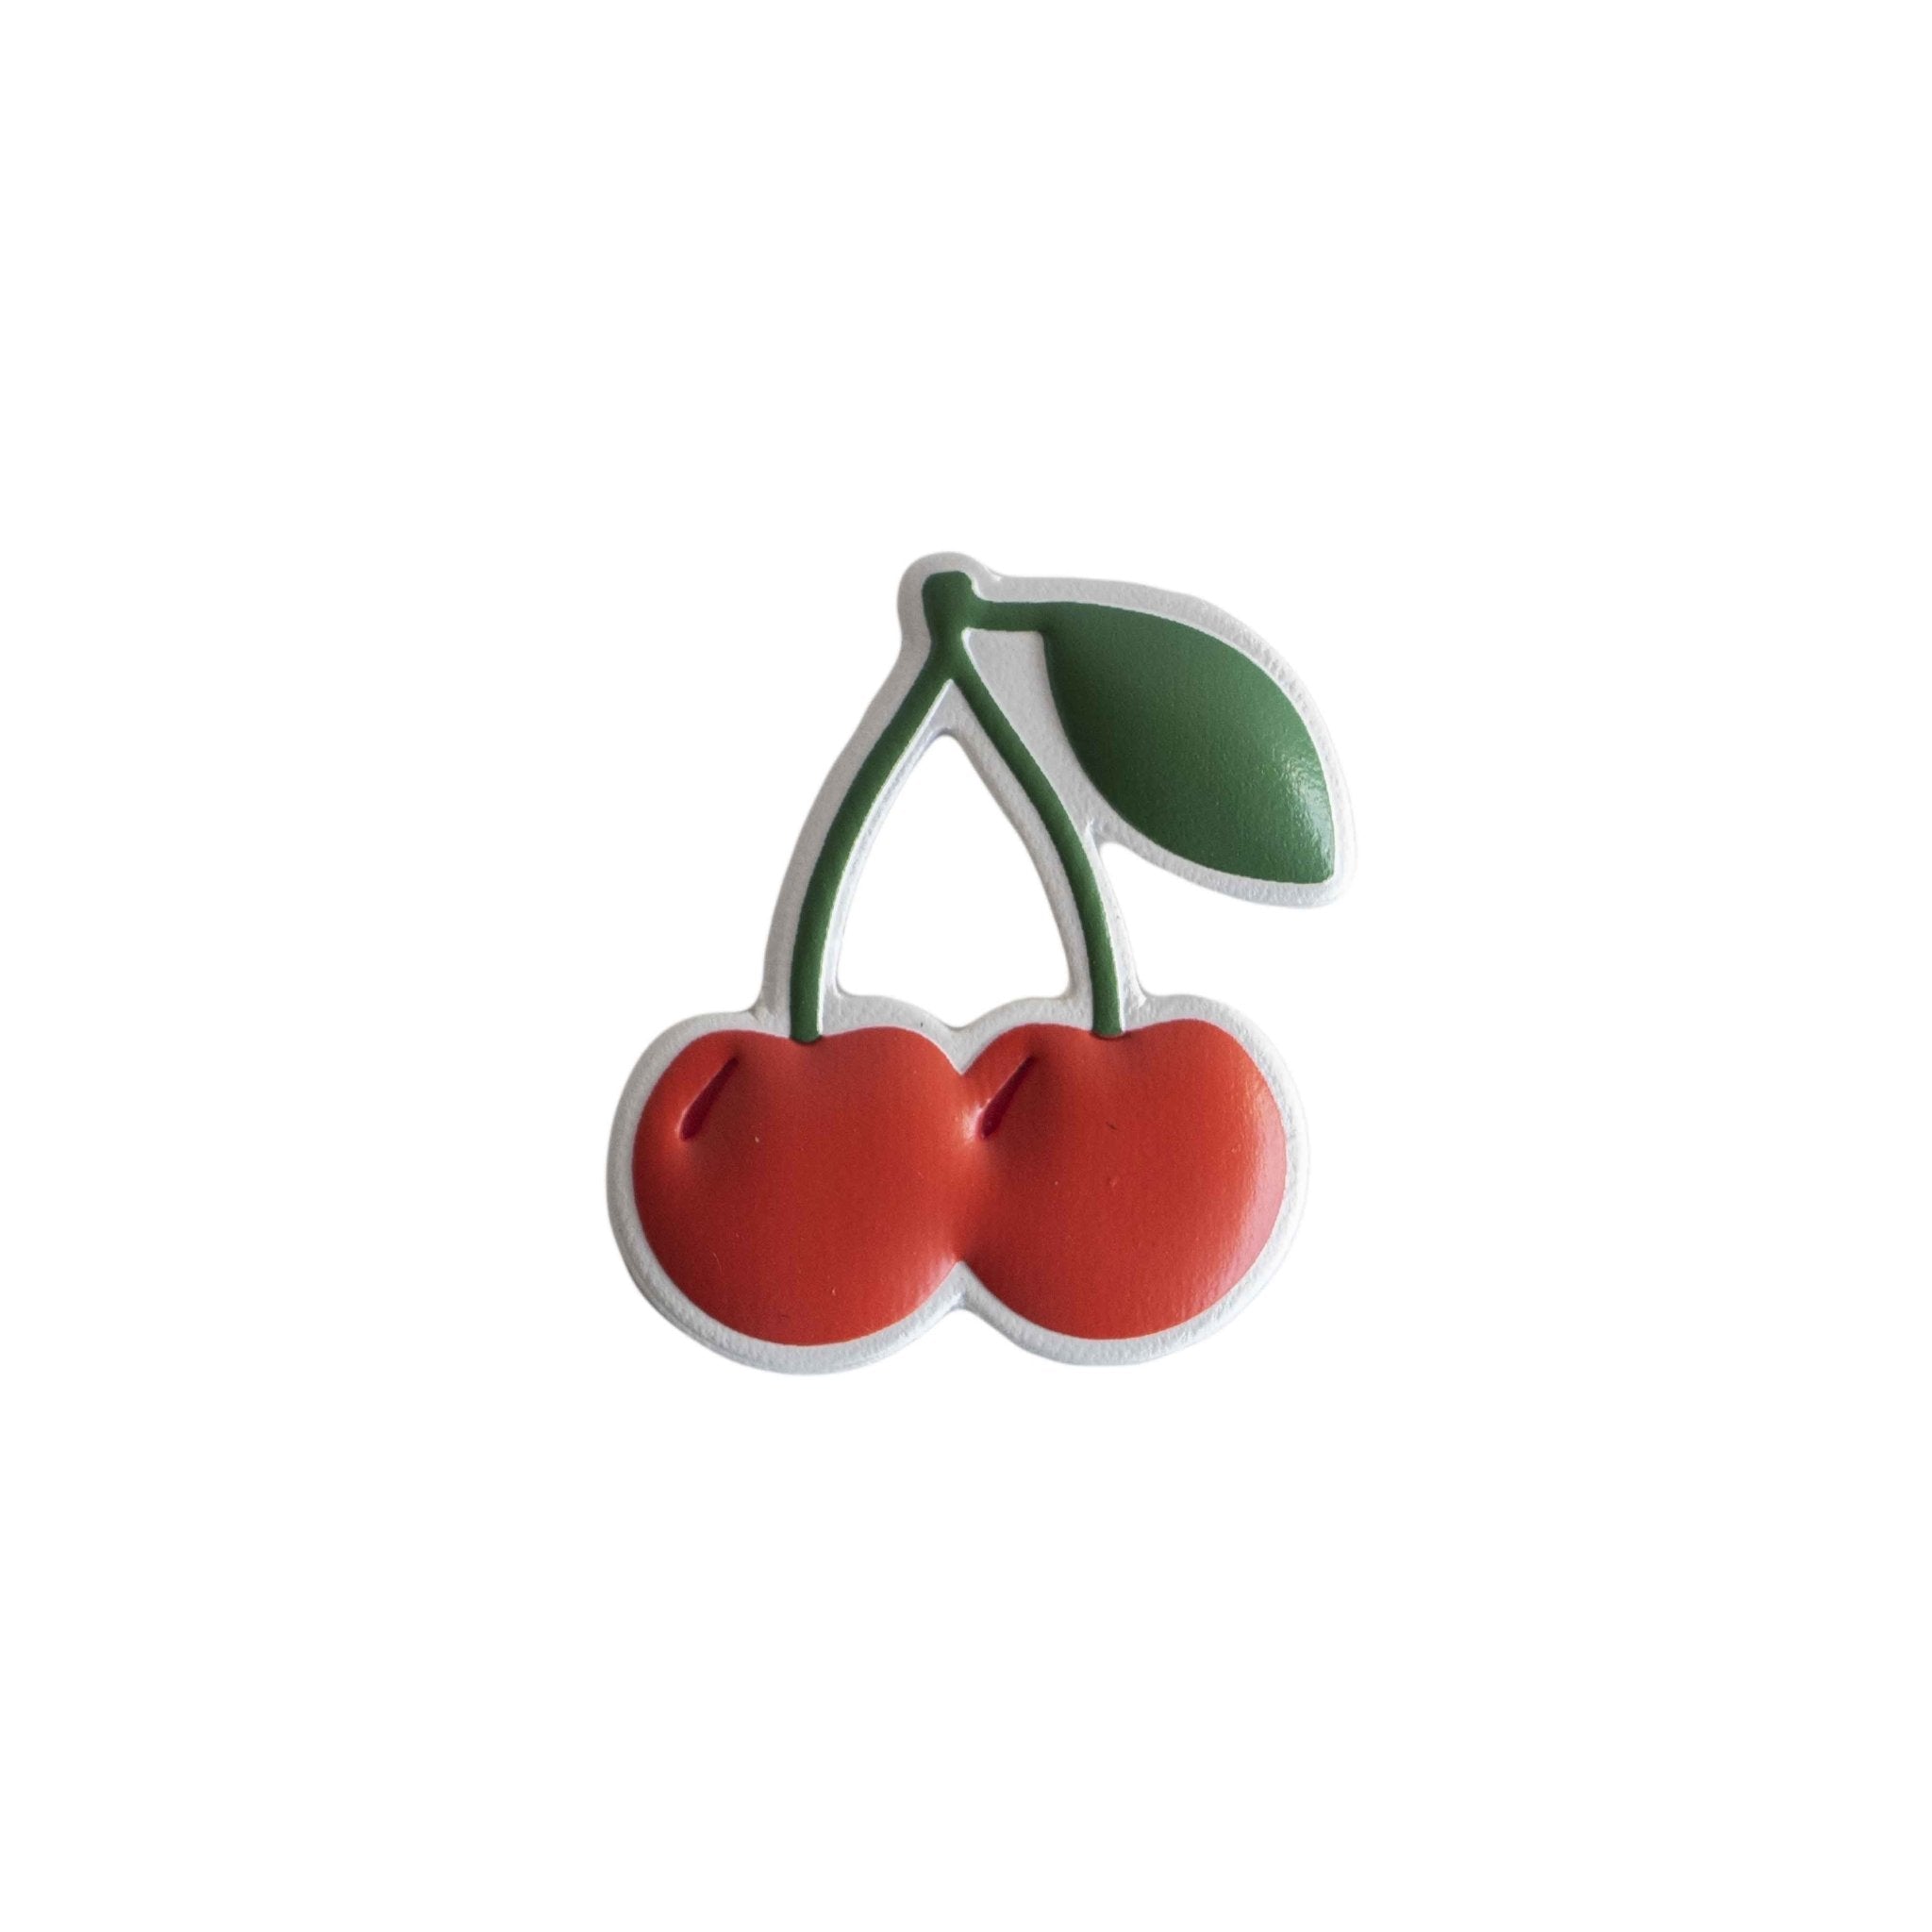 Sticker 3D de 3 x 3 cm con relieve de color rojo, verde y blanco con adhesivo 3M.
